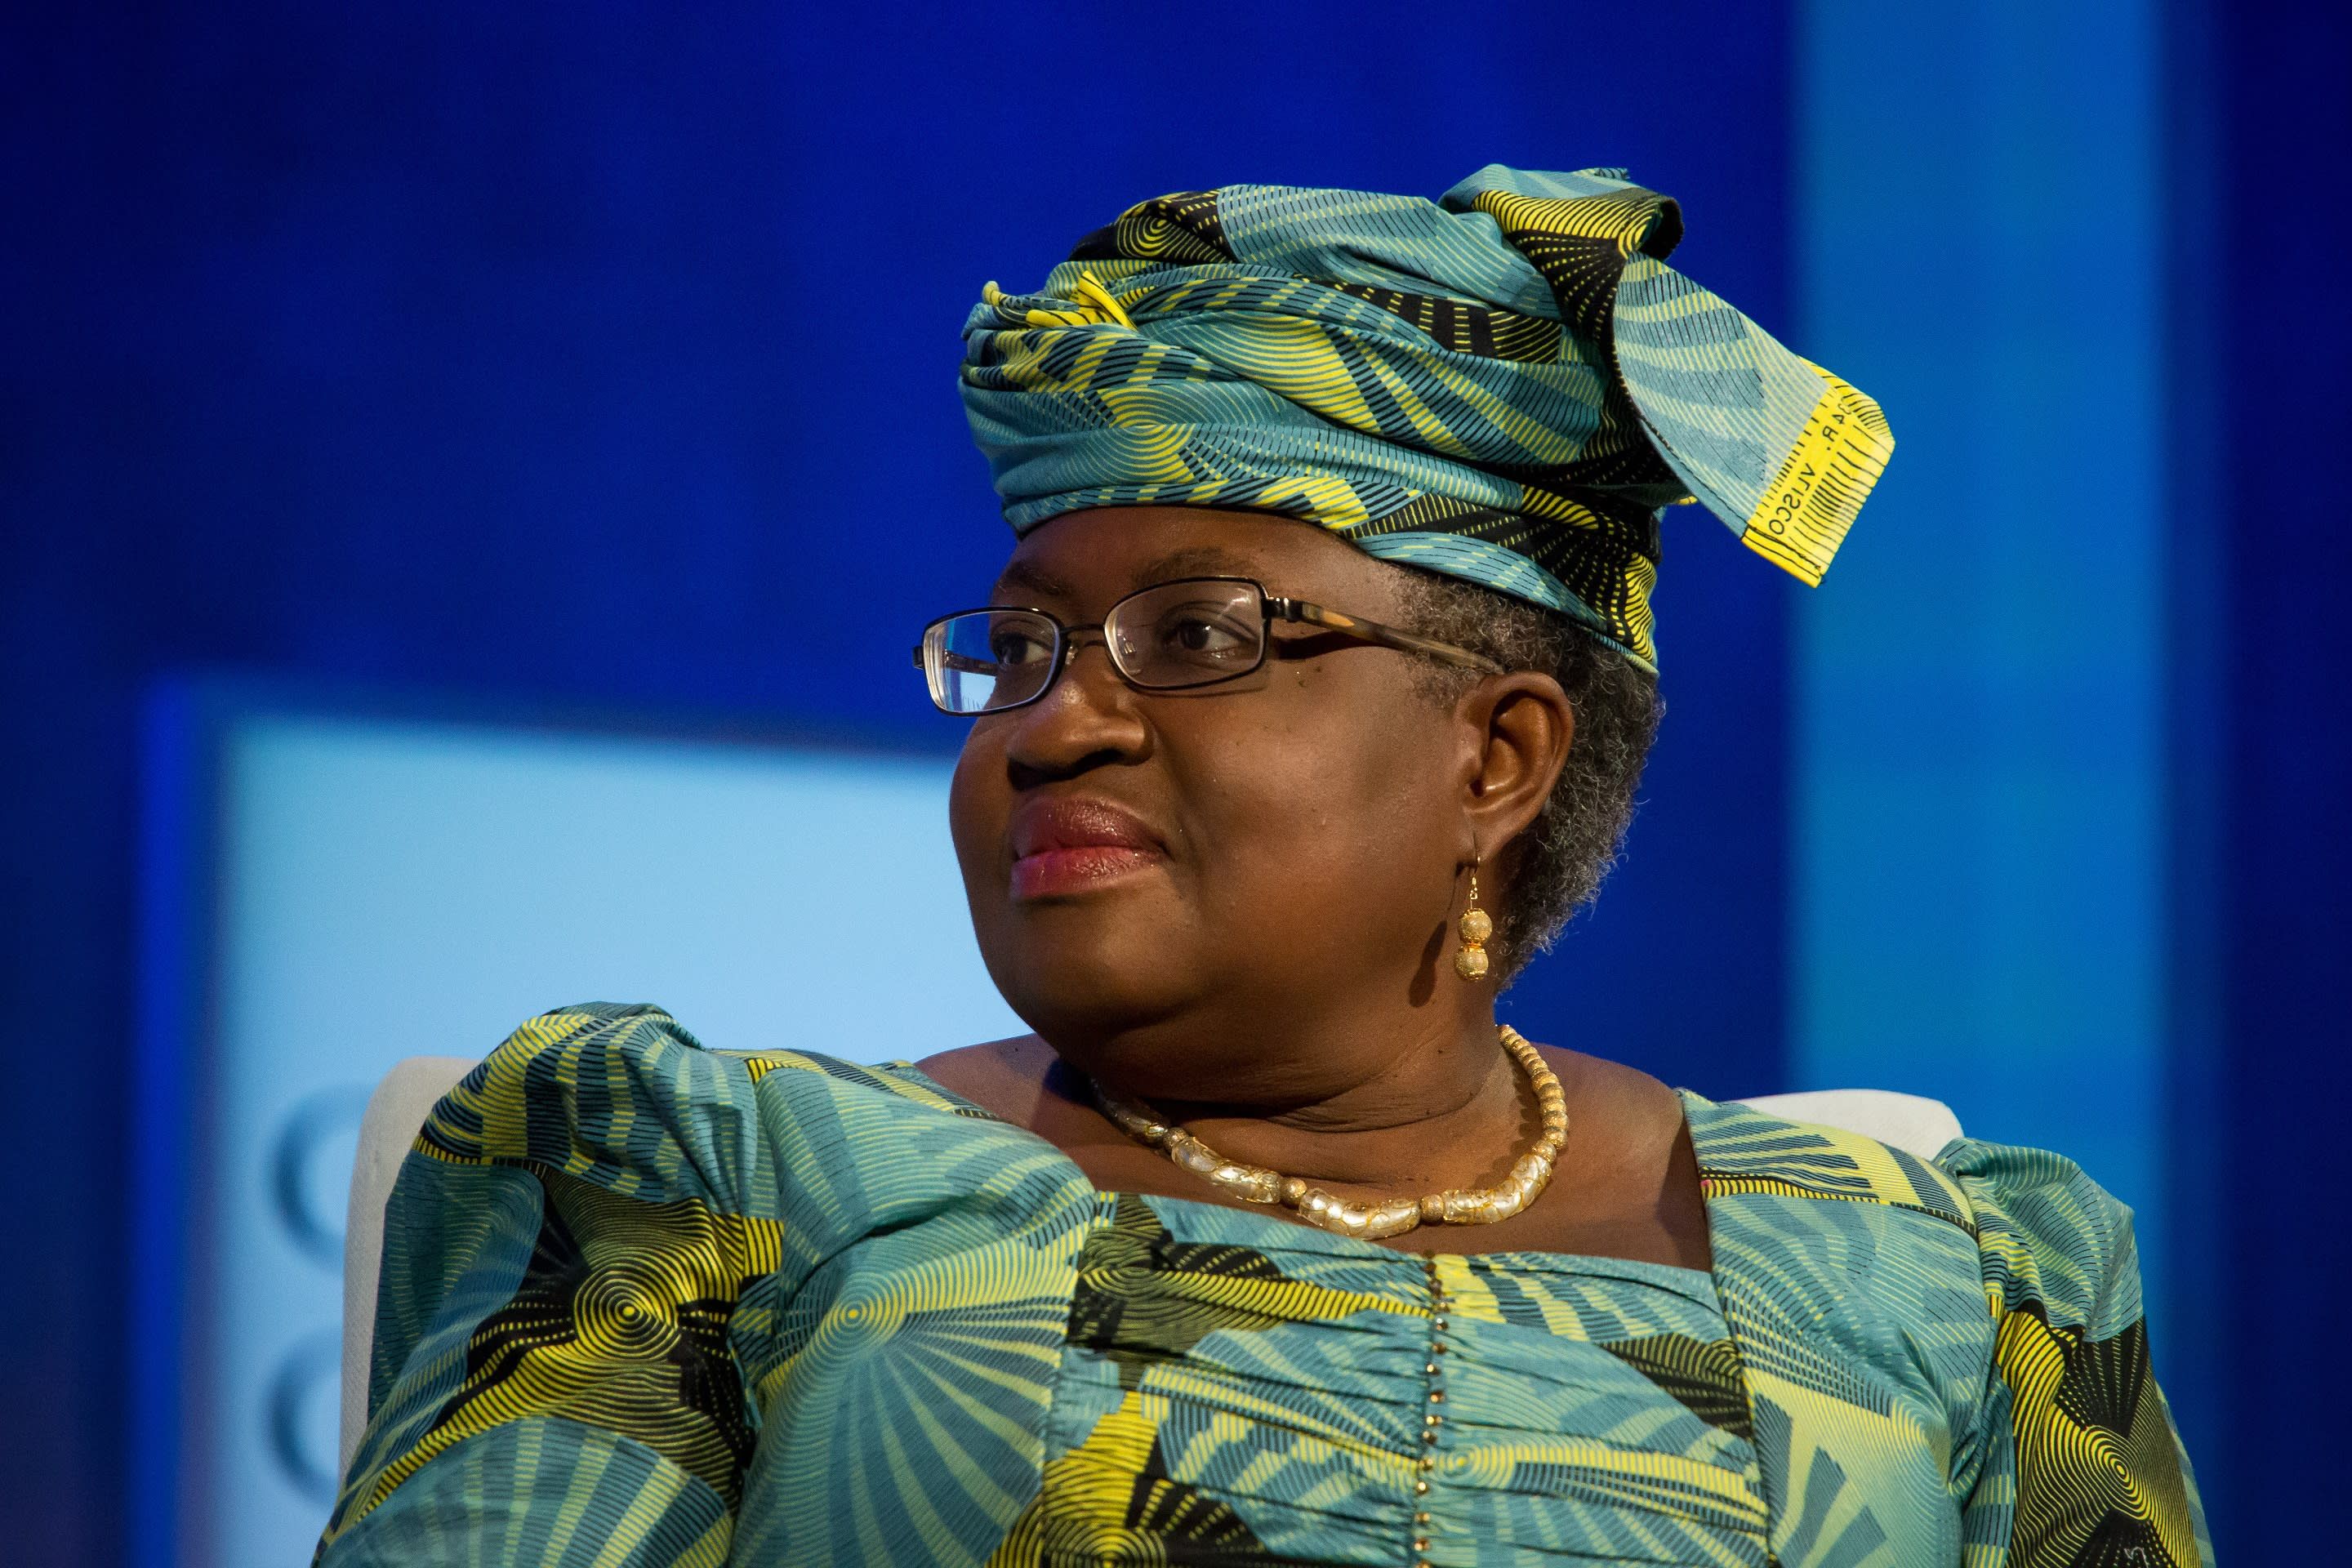 Гендиректором ВТО стала представительница Нигерии Нгози Оконджо-Ивеала 15.02.2021